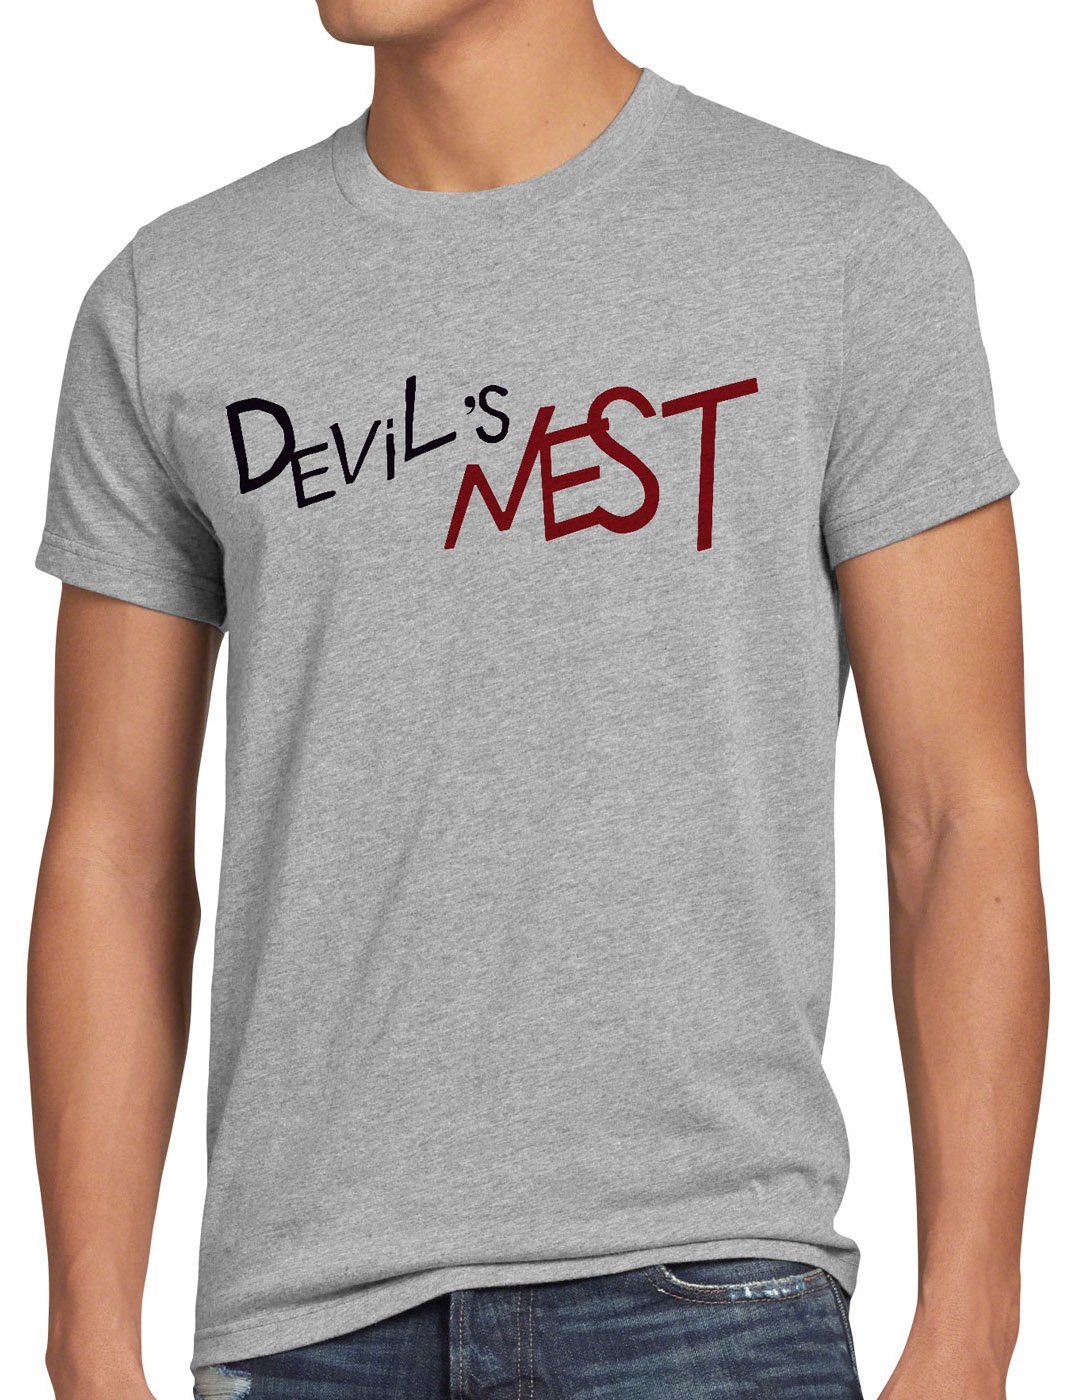 style3 Print-Shirt Herren T-Shirt Devils Nest Jungen Kostüm Cosplay Alchemist Anime Fan-Shirt grau meliert